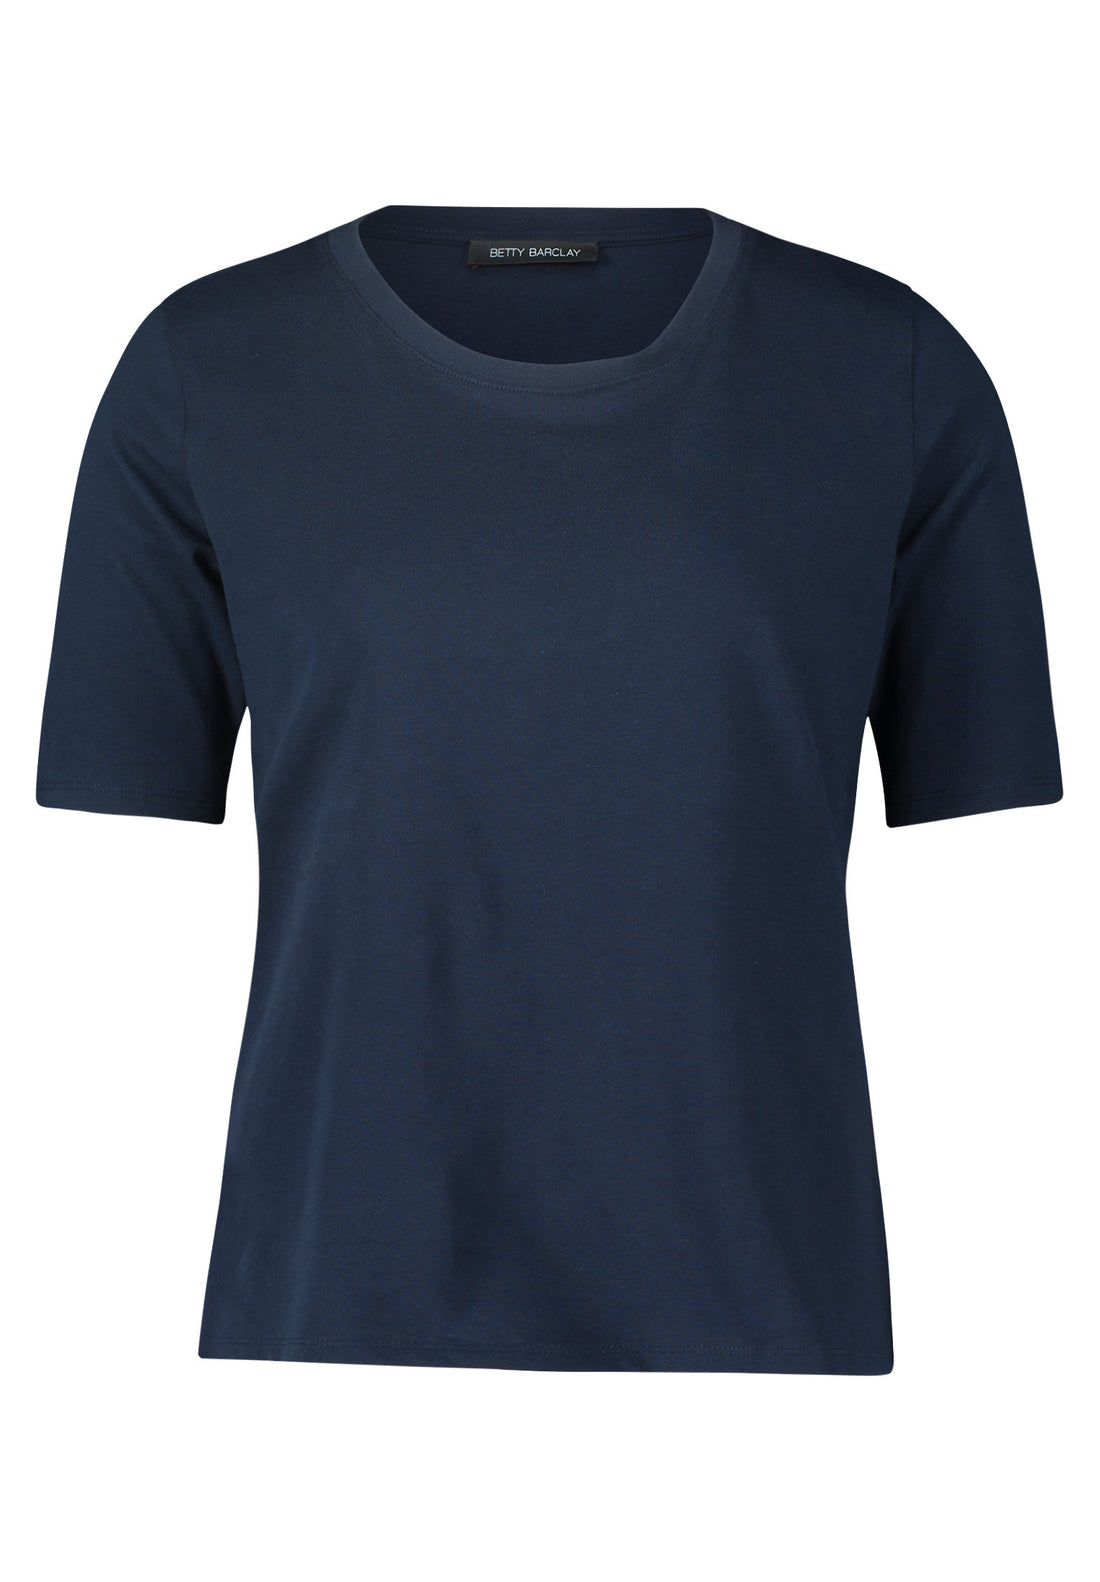 Navy Blue Round Neck T Shirt_2033 2509_8345_01